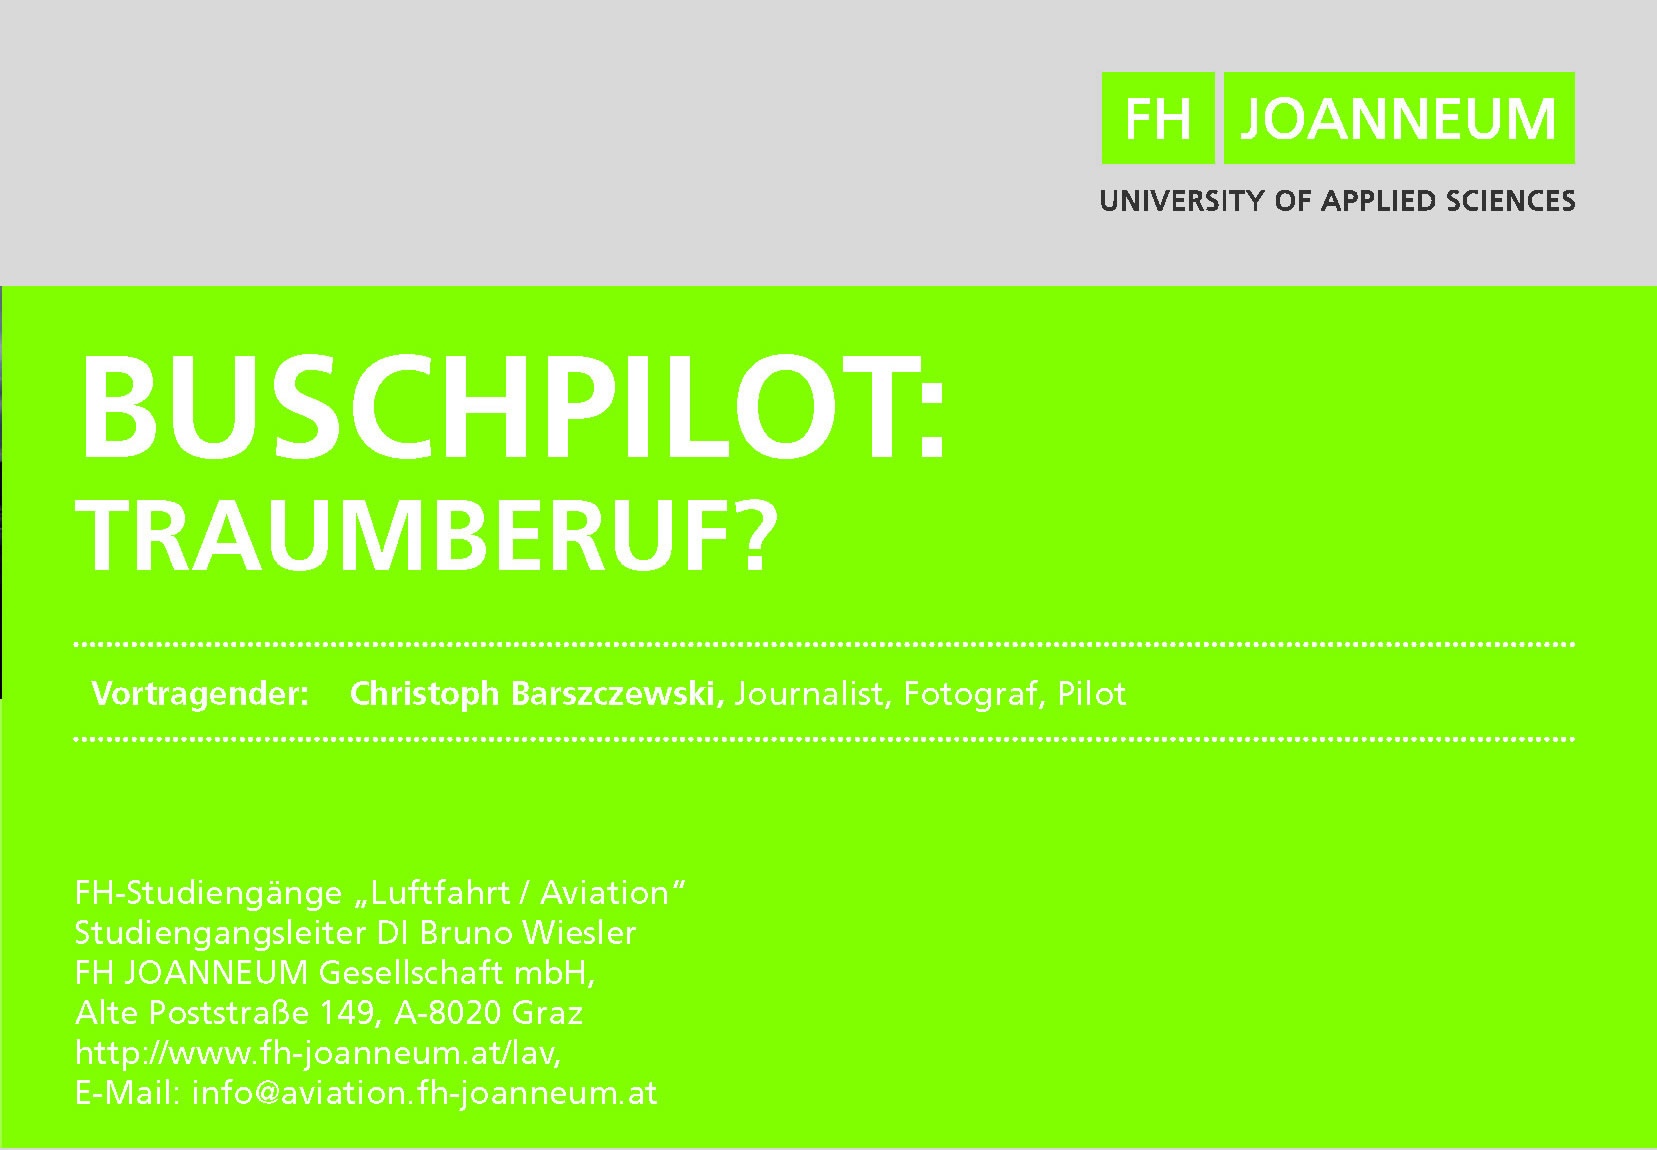 Buschpilot Traumberuf Vortrag FH Joanneum Graz